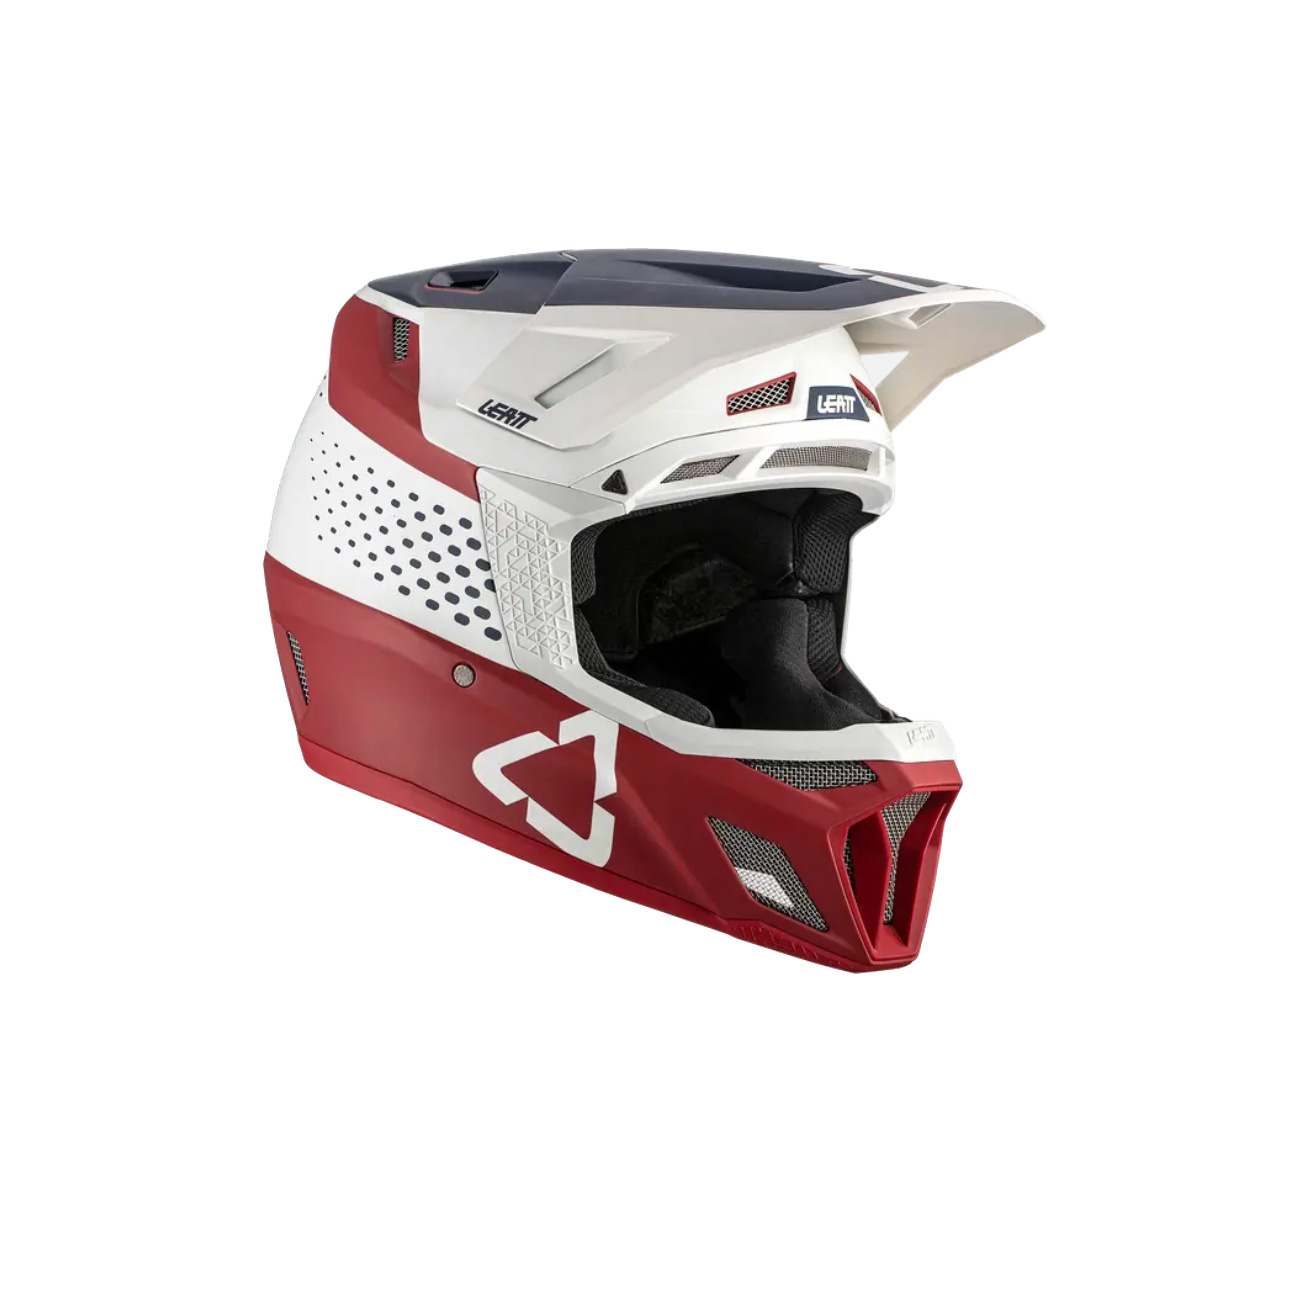 Leatt MTB 8.0 Full Face Helmet, Large (59-60cm), Chilli